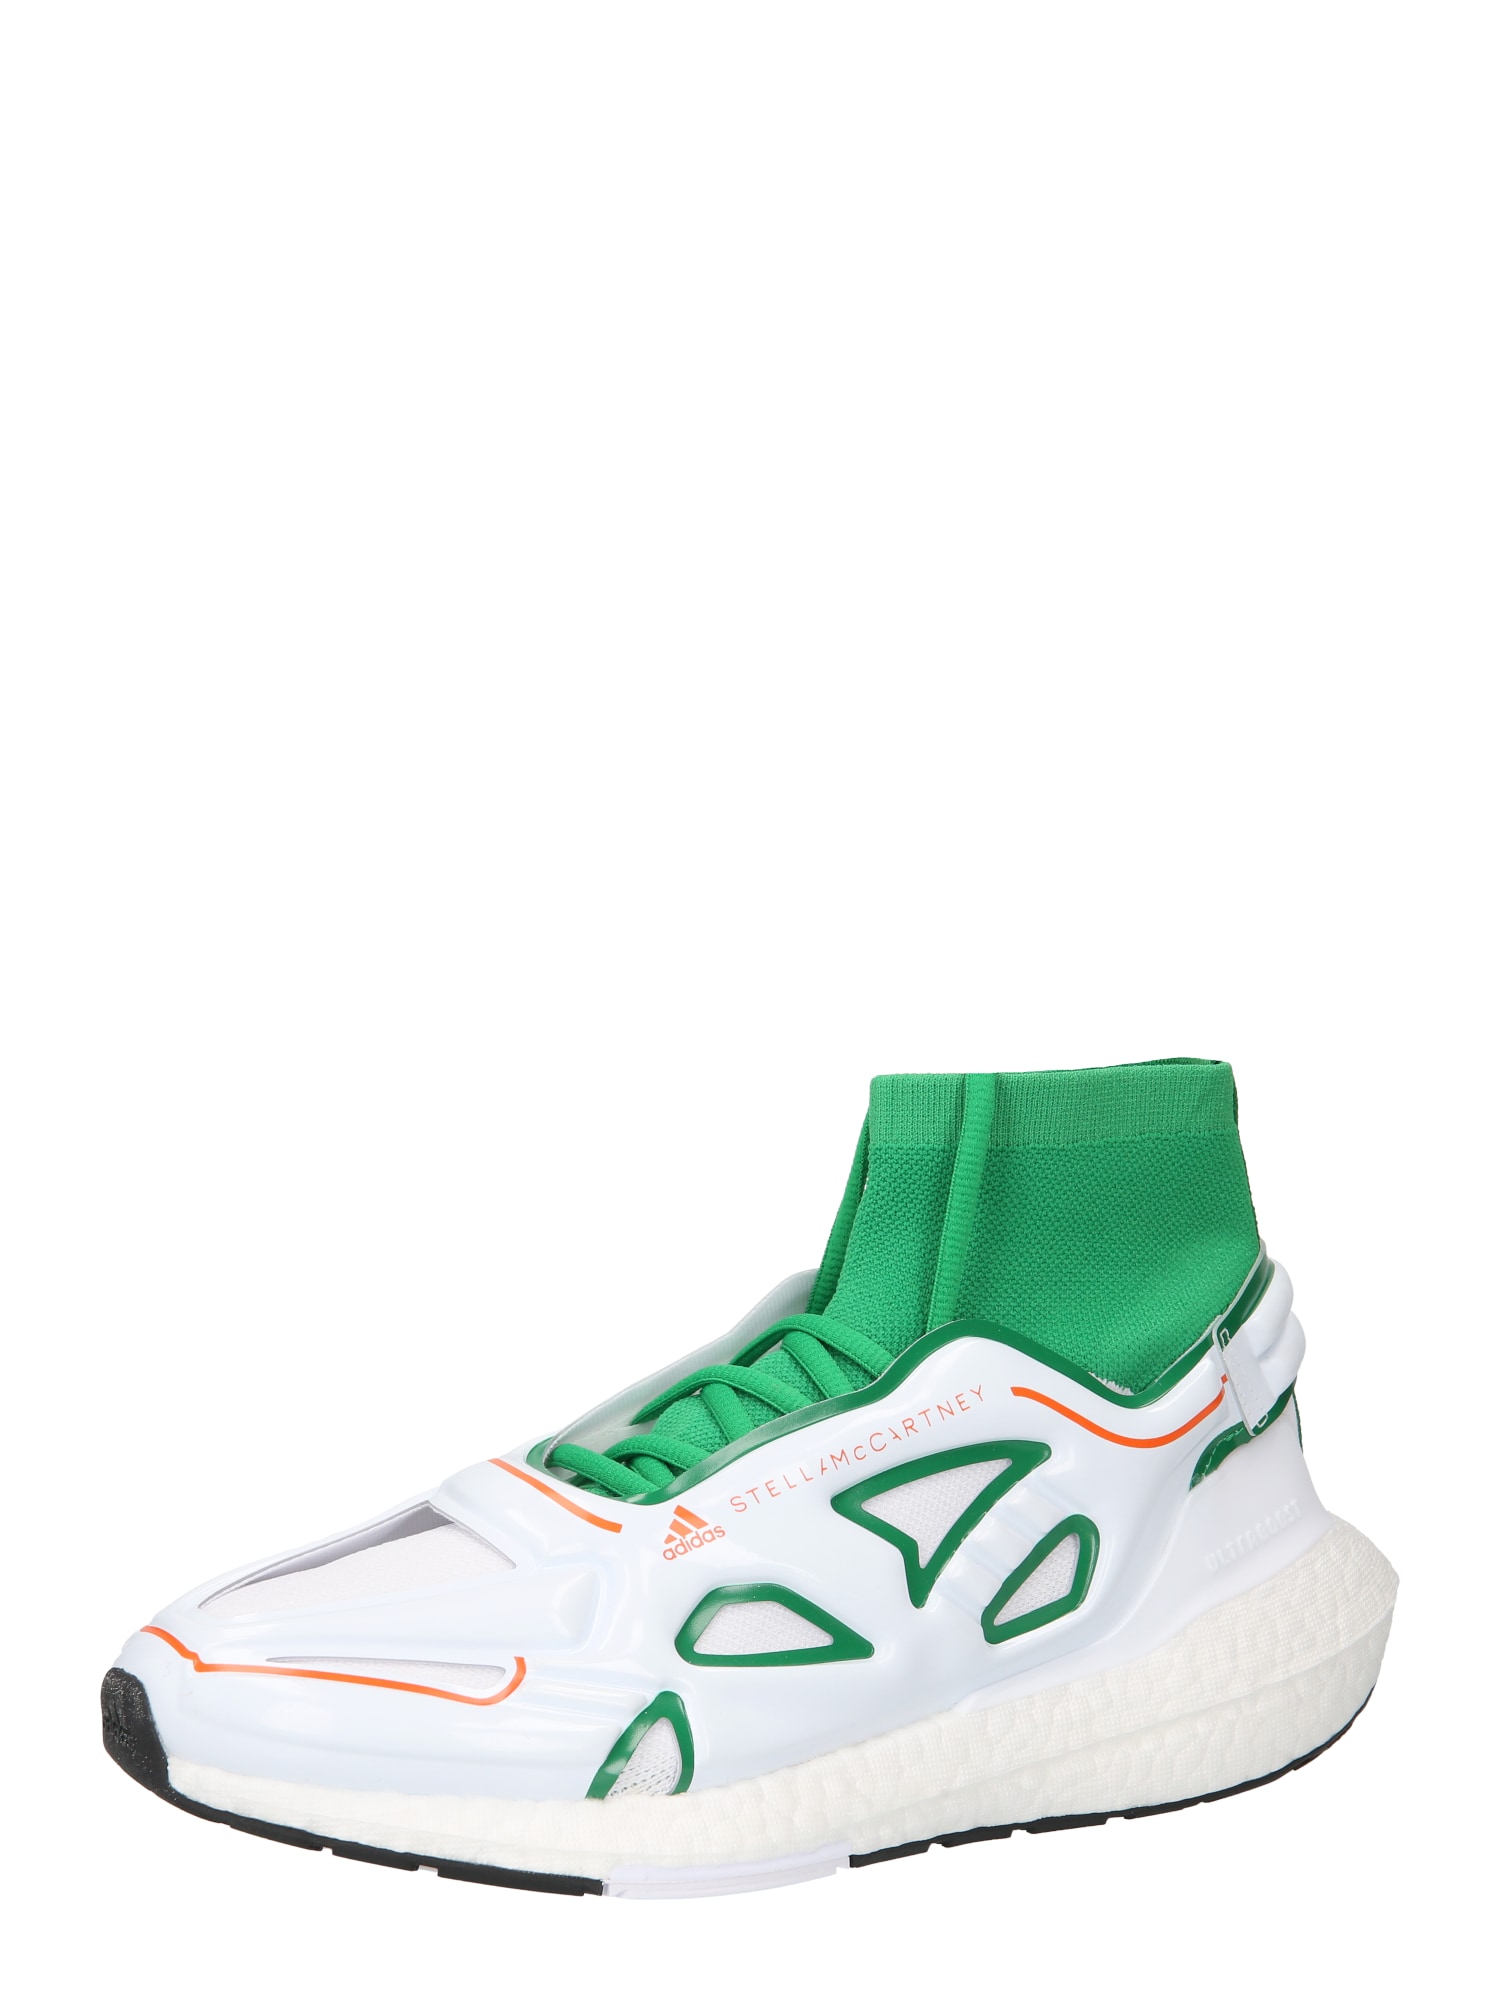 ADIDAS BY STELLA MCCARTNEY Bėgimo batai 'Ultraboost 22' žalia / oranžinė / balta